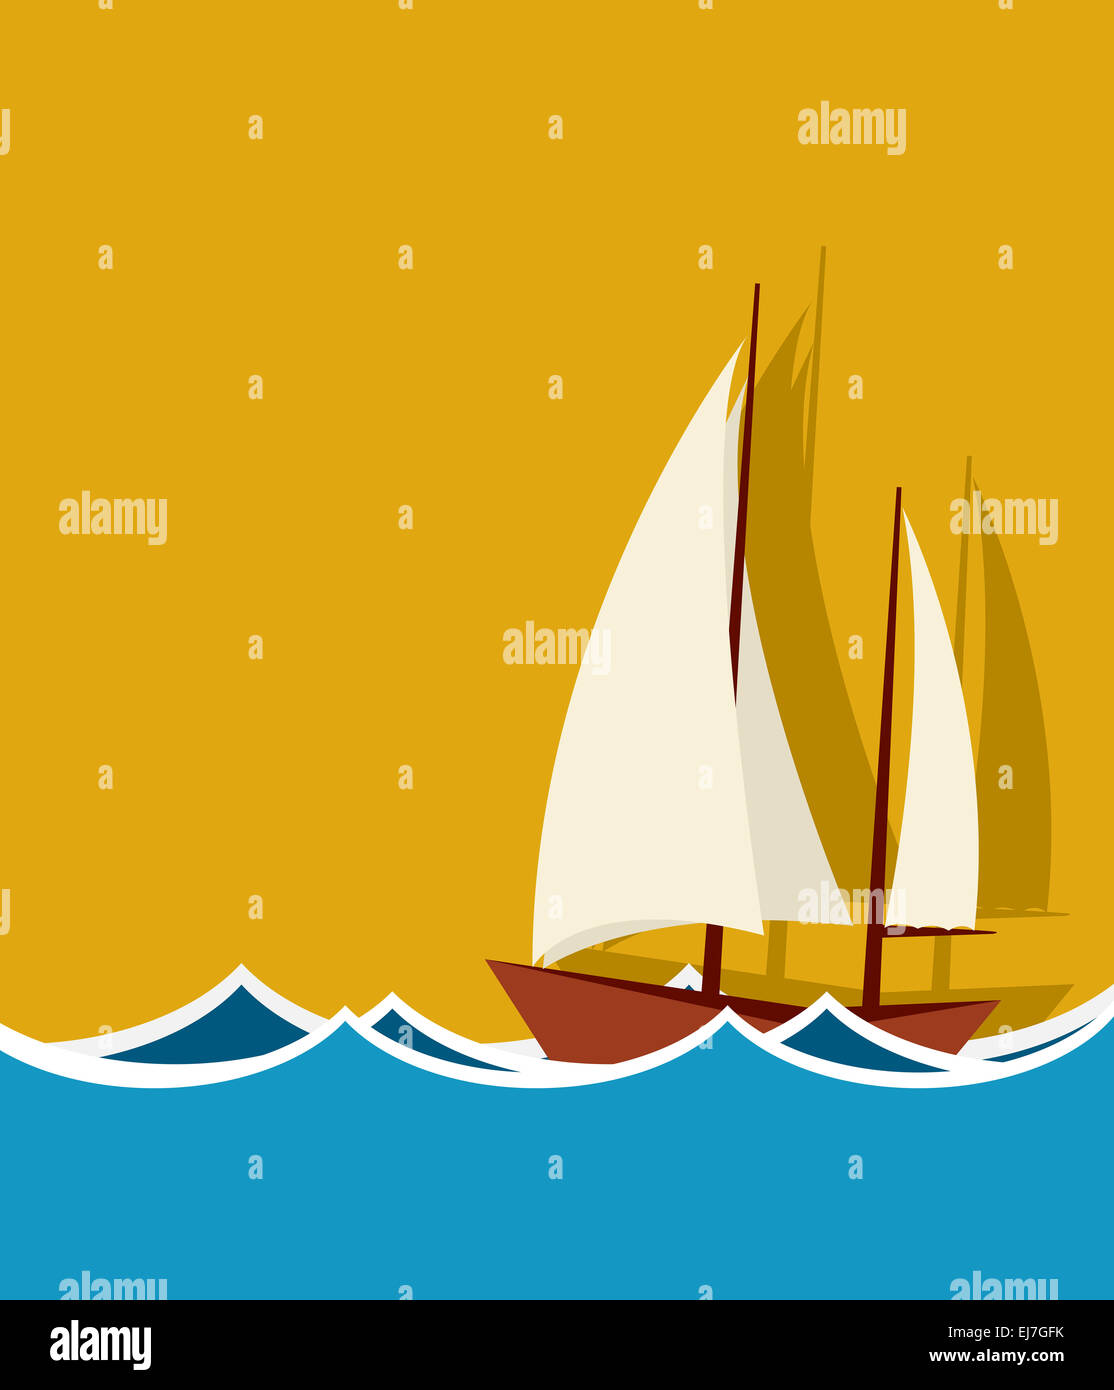 Sailing boat background Stock Photo